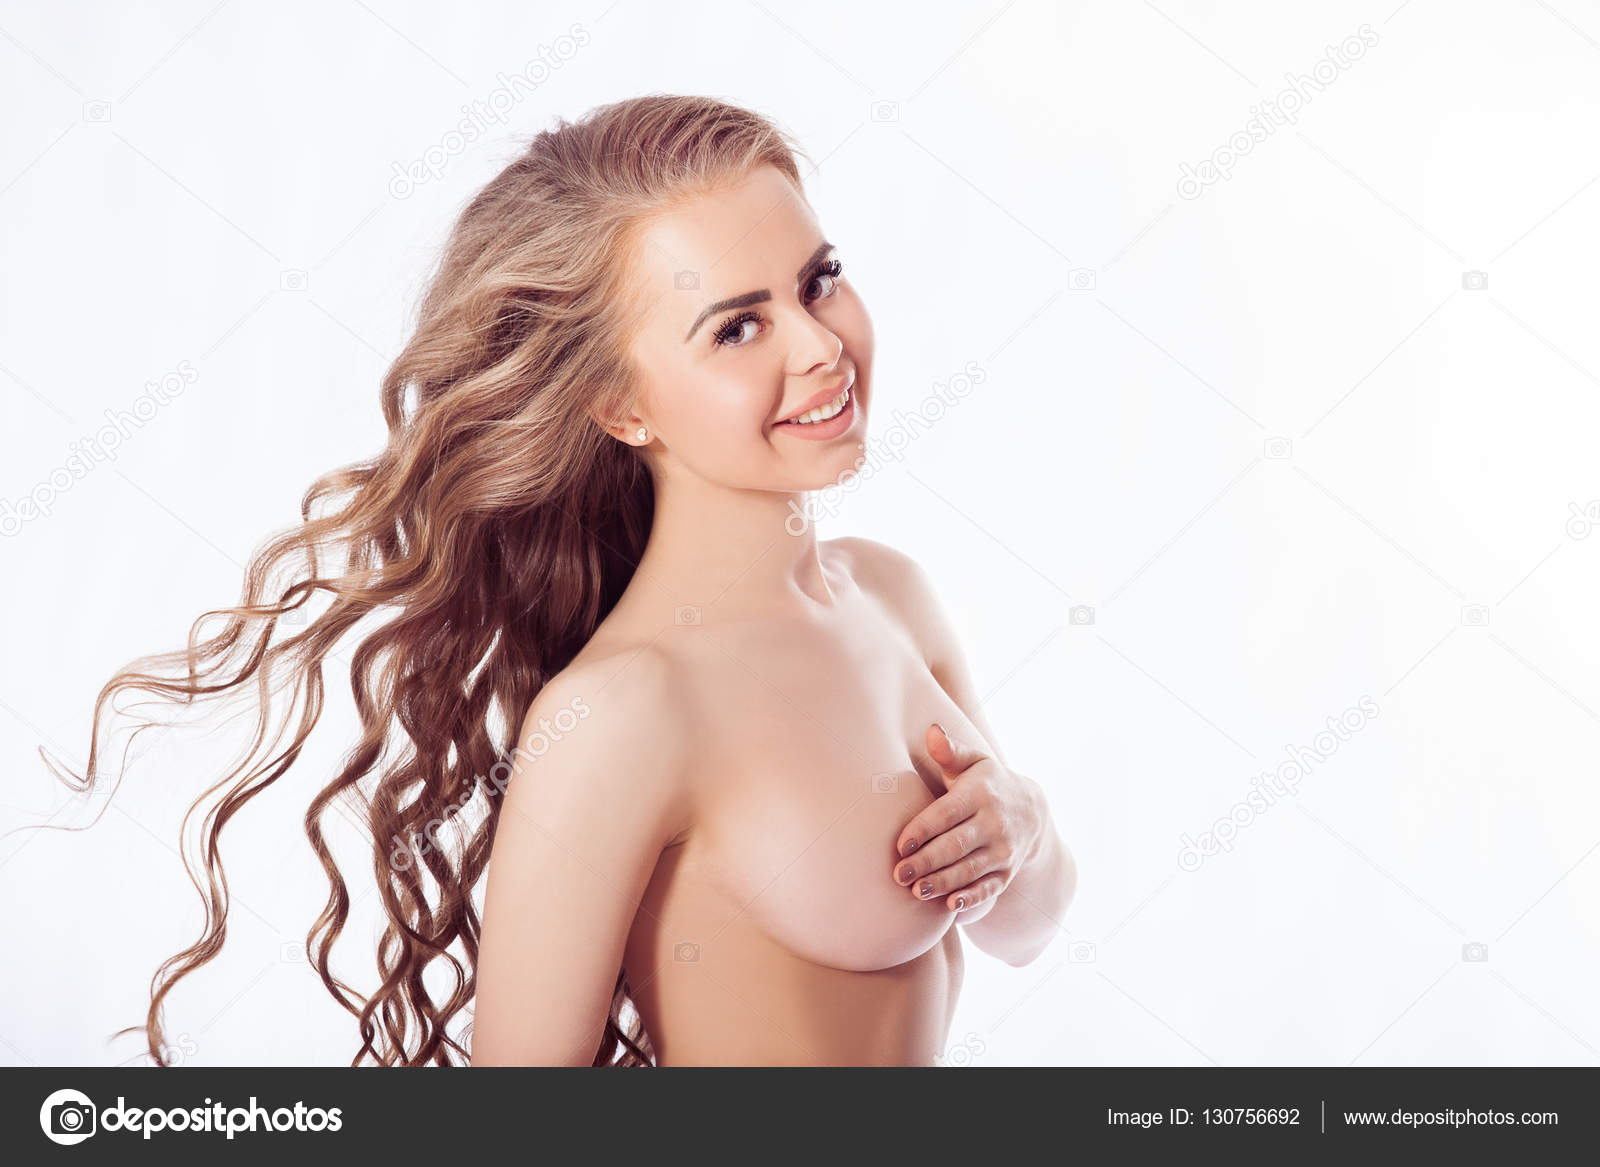 Naked Girl Standing